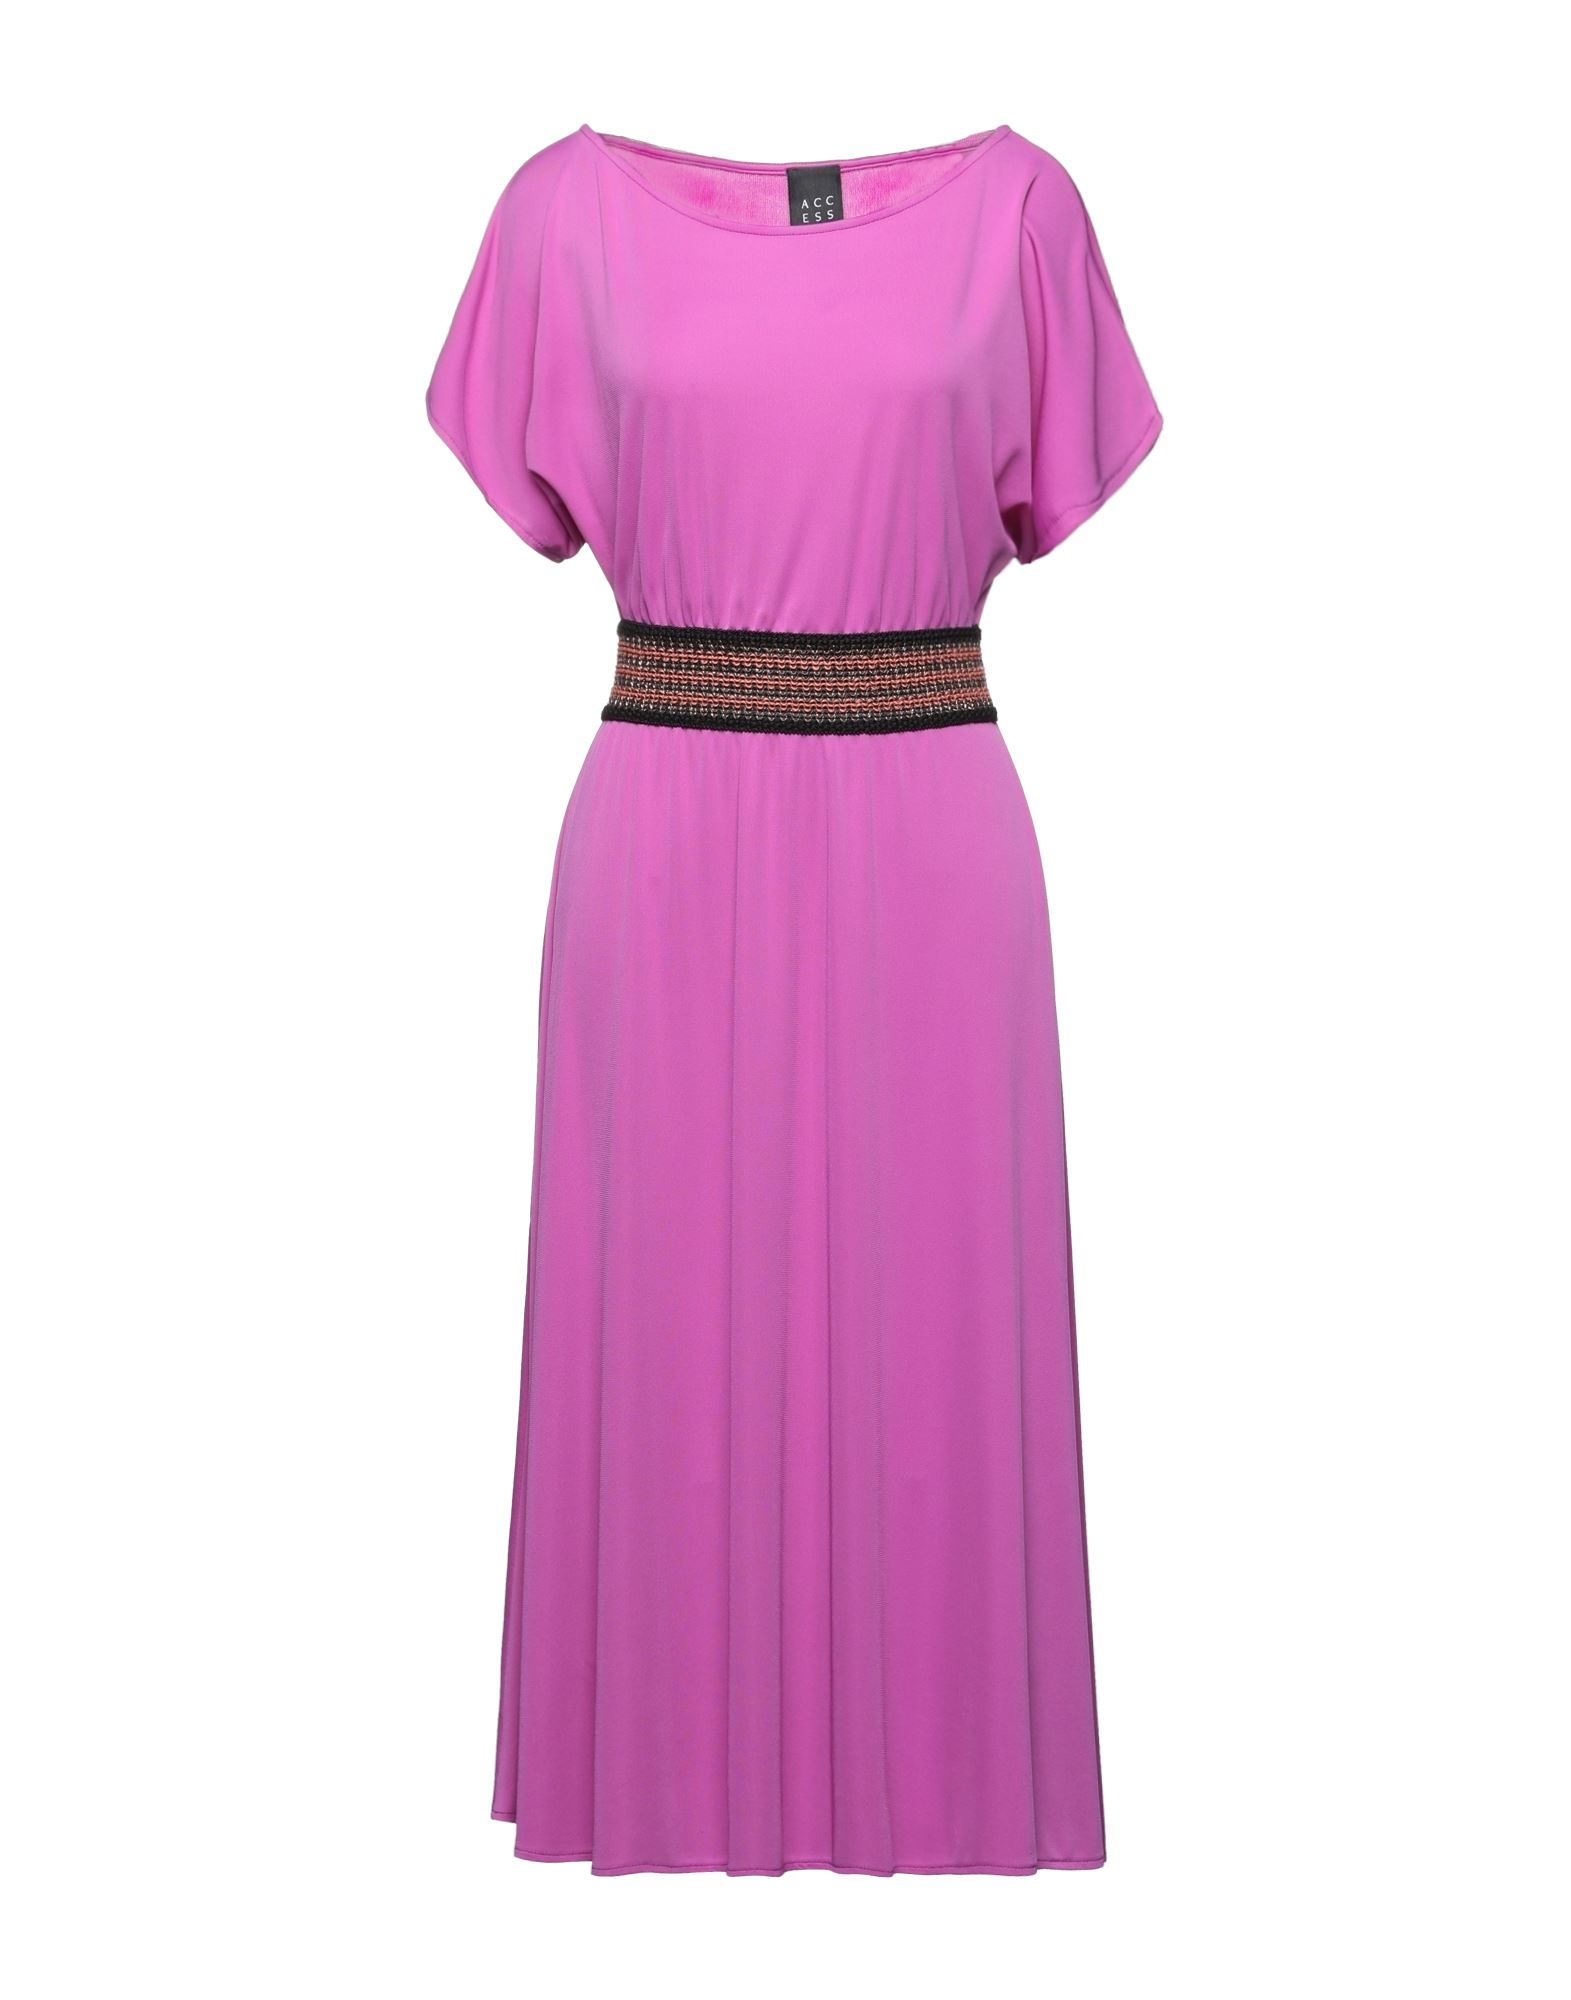 Access Fashion 3/4 Length Dresses In Fuchsia